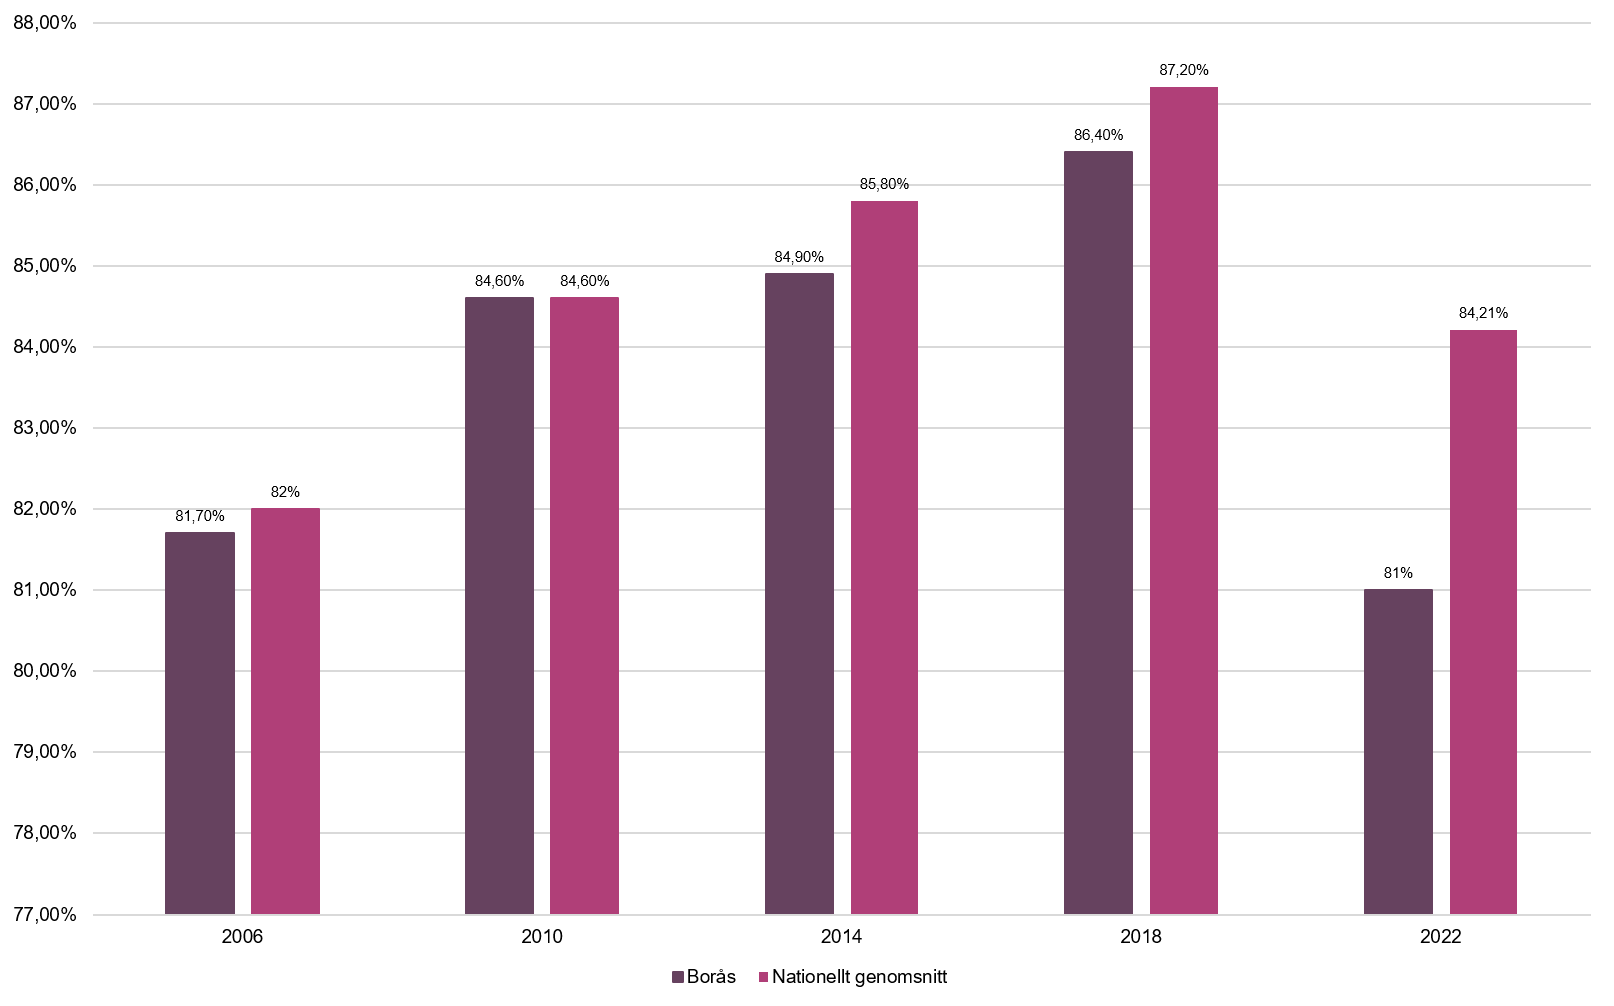 Tabell som visar valdeltagandet i Borås jämfört med det nationella genomsnittet, från år 2006 till 2022.